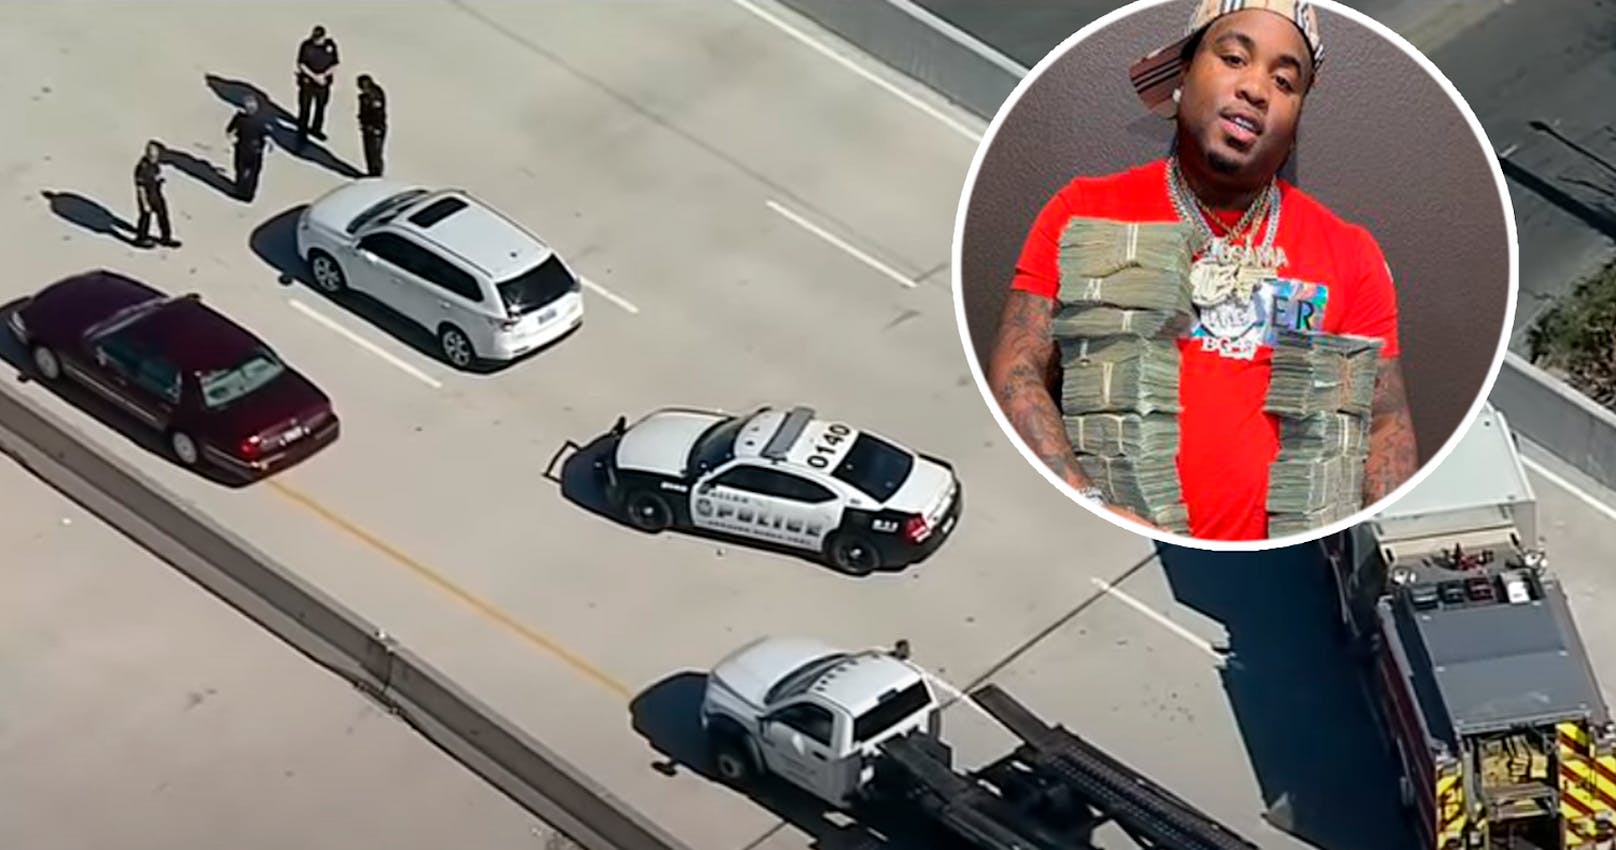 Der Rapper wurde auf dem Freeway getötet.